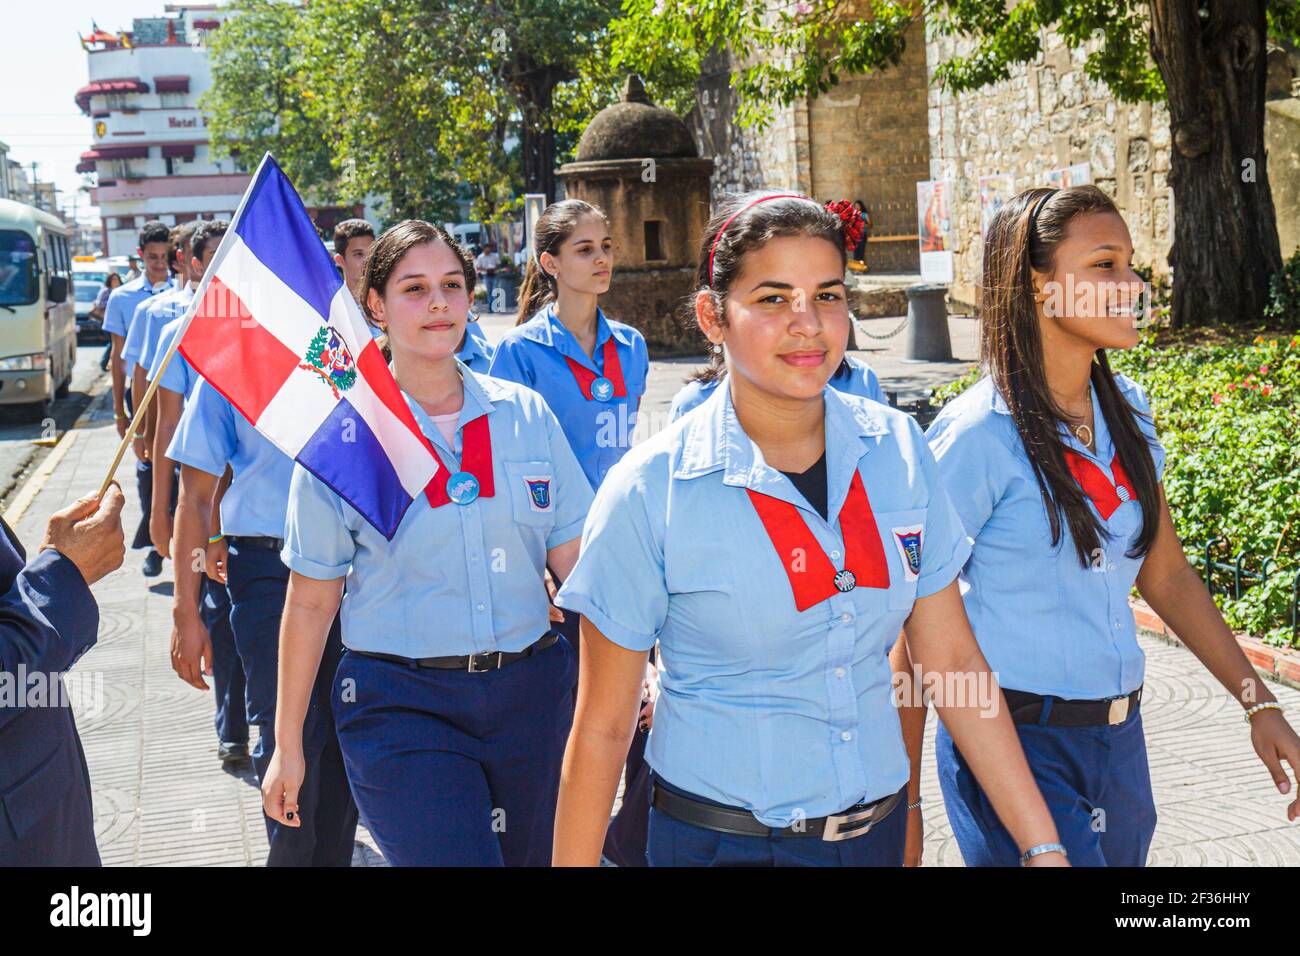 Santo Domingo Dominican Republic,Ciudad Colonial Puerta Del Conde,Calle Hincado school uniforms Hispanic Black students teen teenage girls,flag class Stock Photo